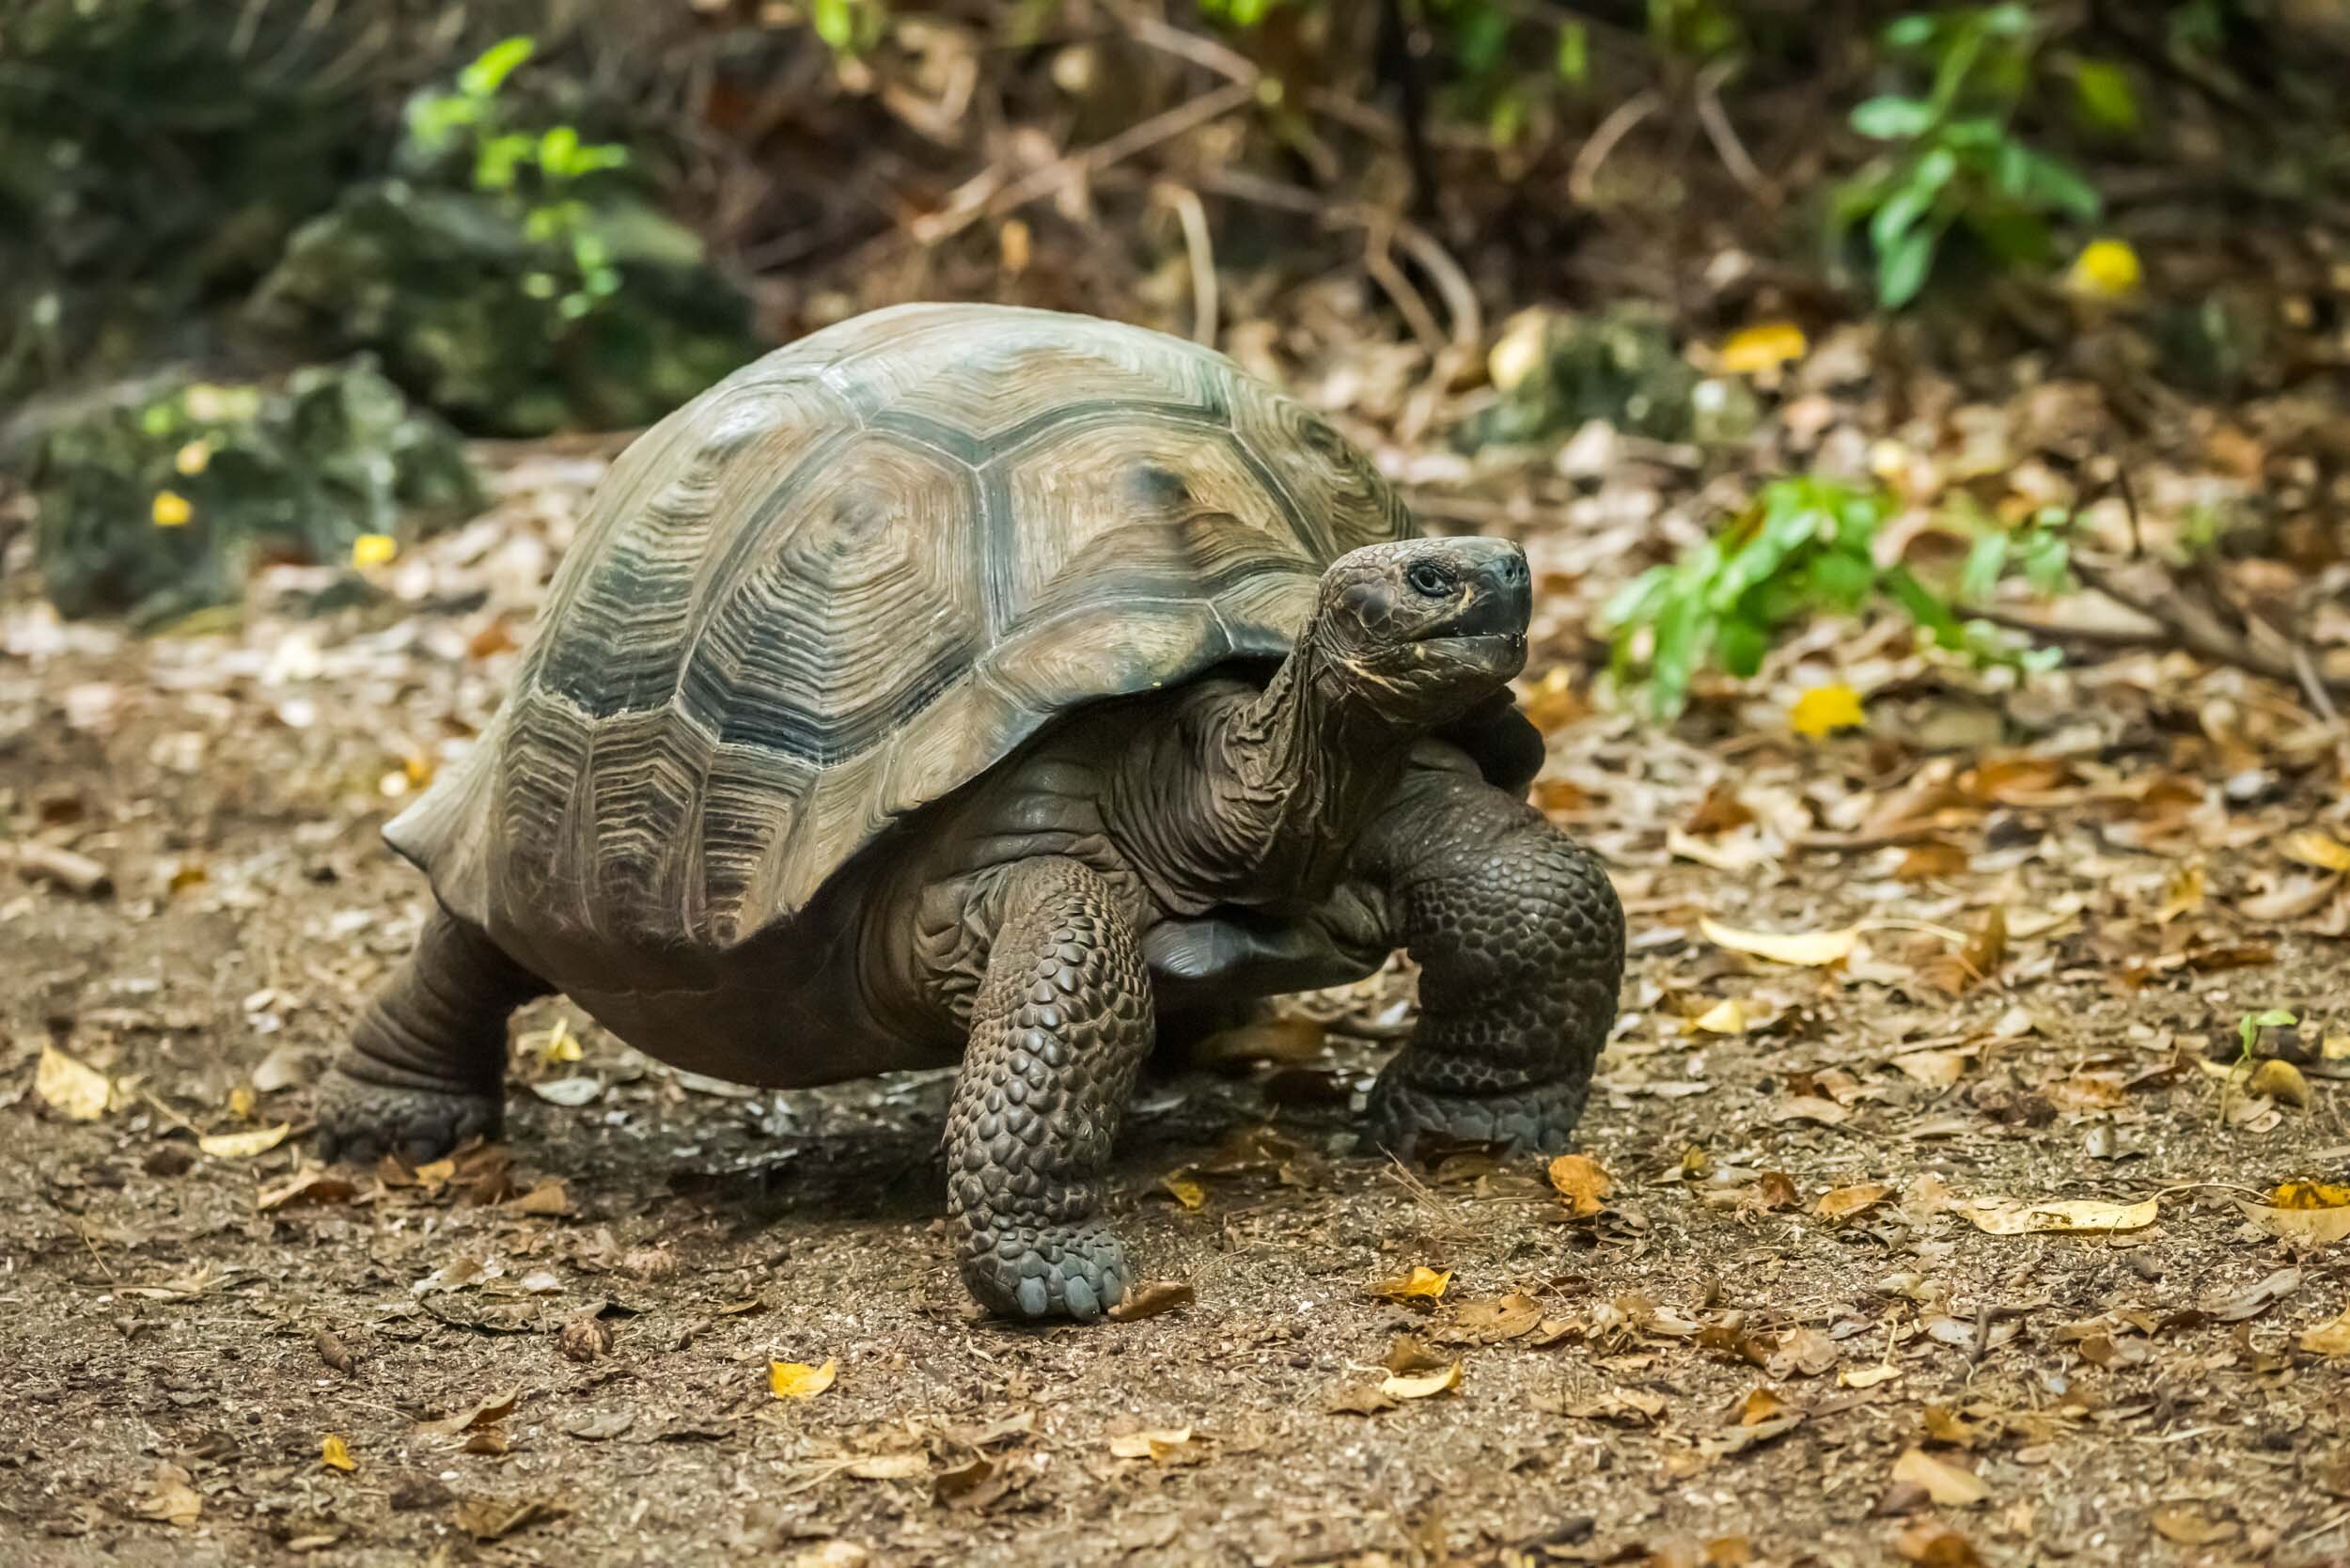 Galapagos giant tortoise walking along gravel path: 59 downloads